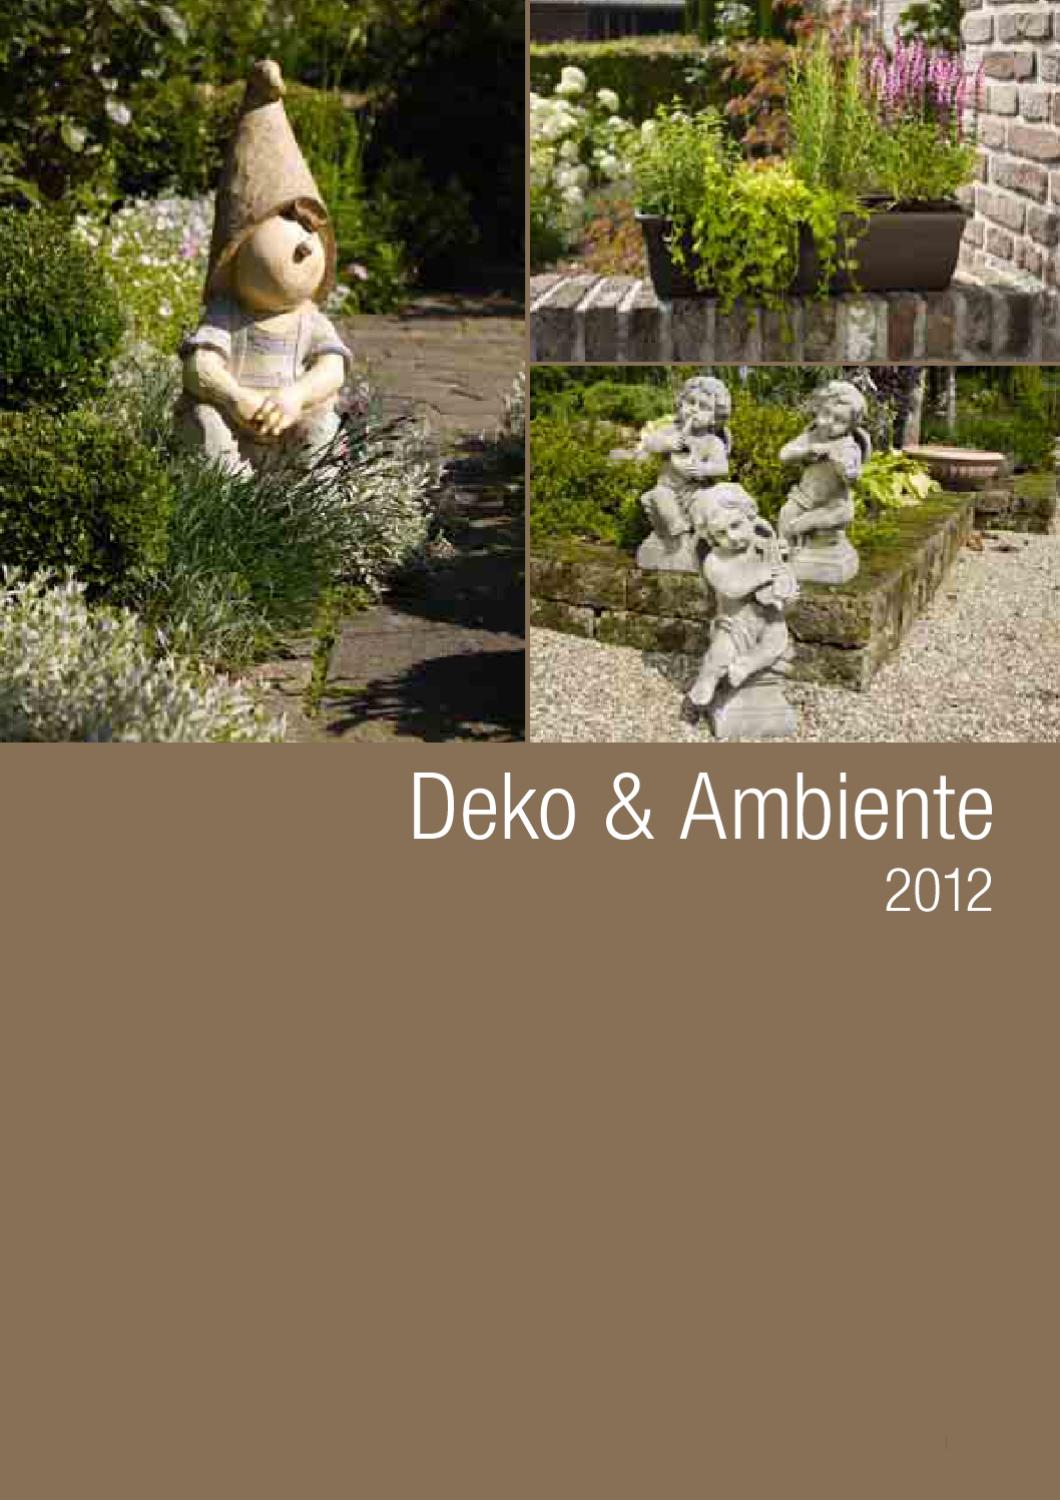 Deko Schaf Garten Schön Deko & Ambiente by Mats andersson issuu